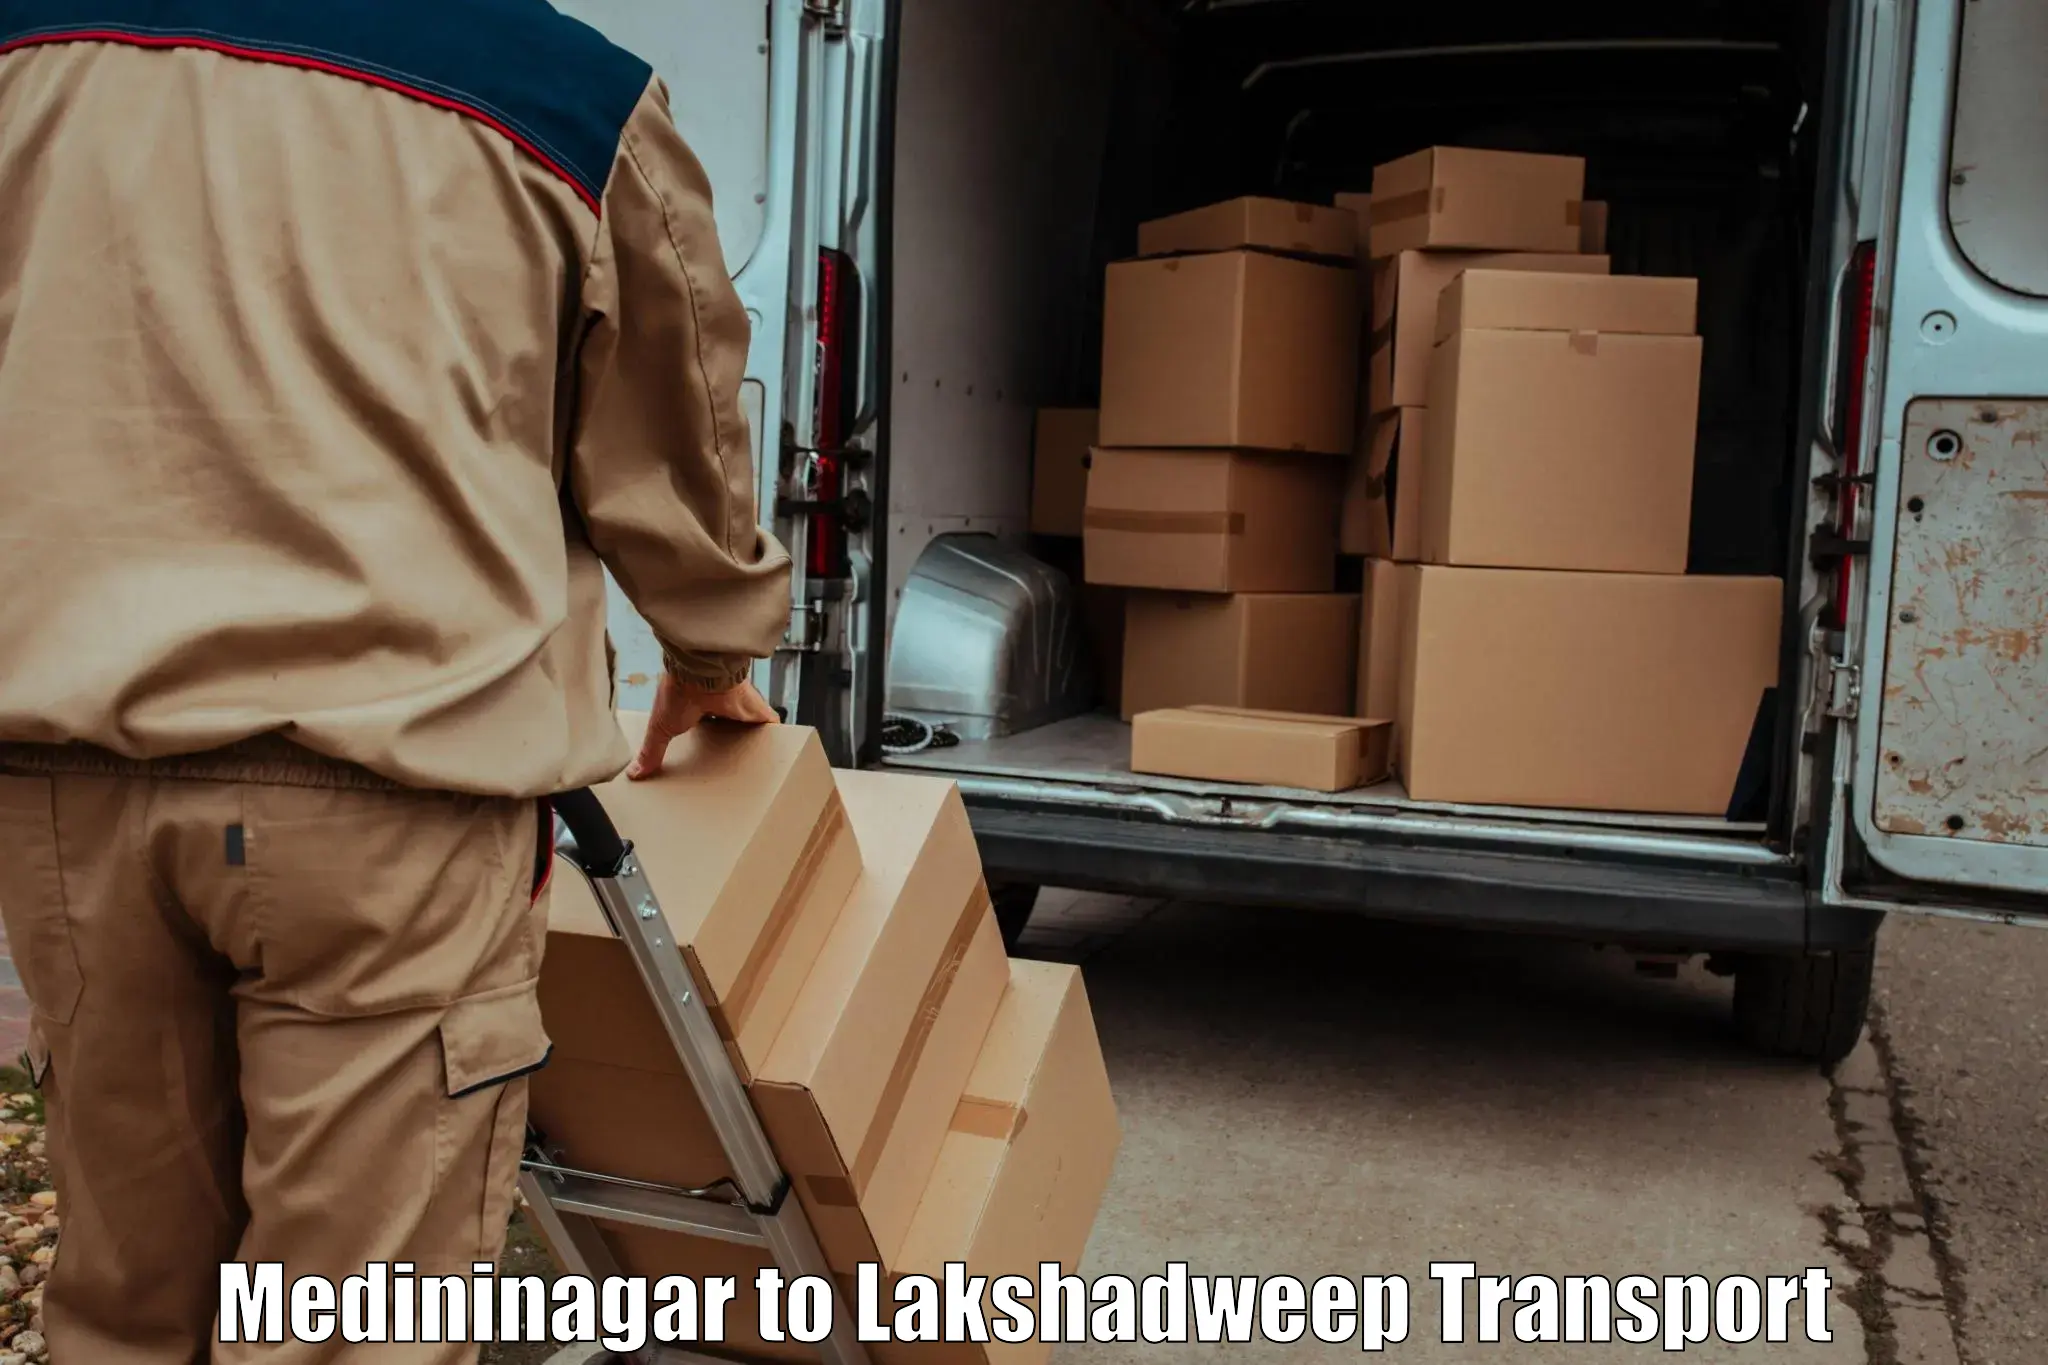 Parcel transport services Medininagar to Lakshadweep